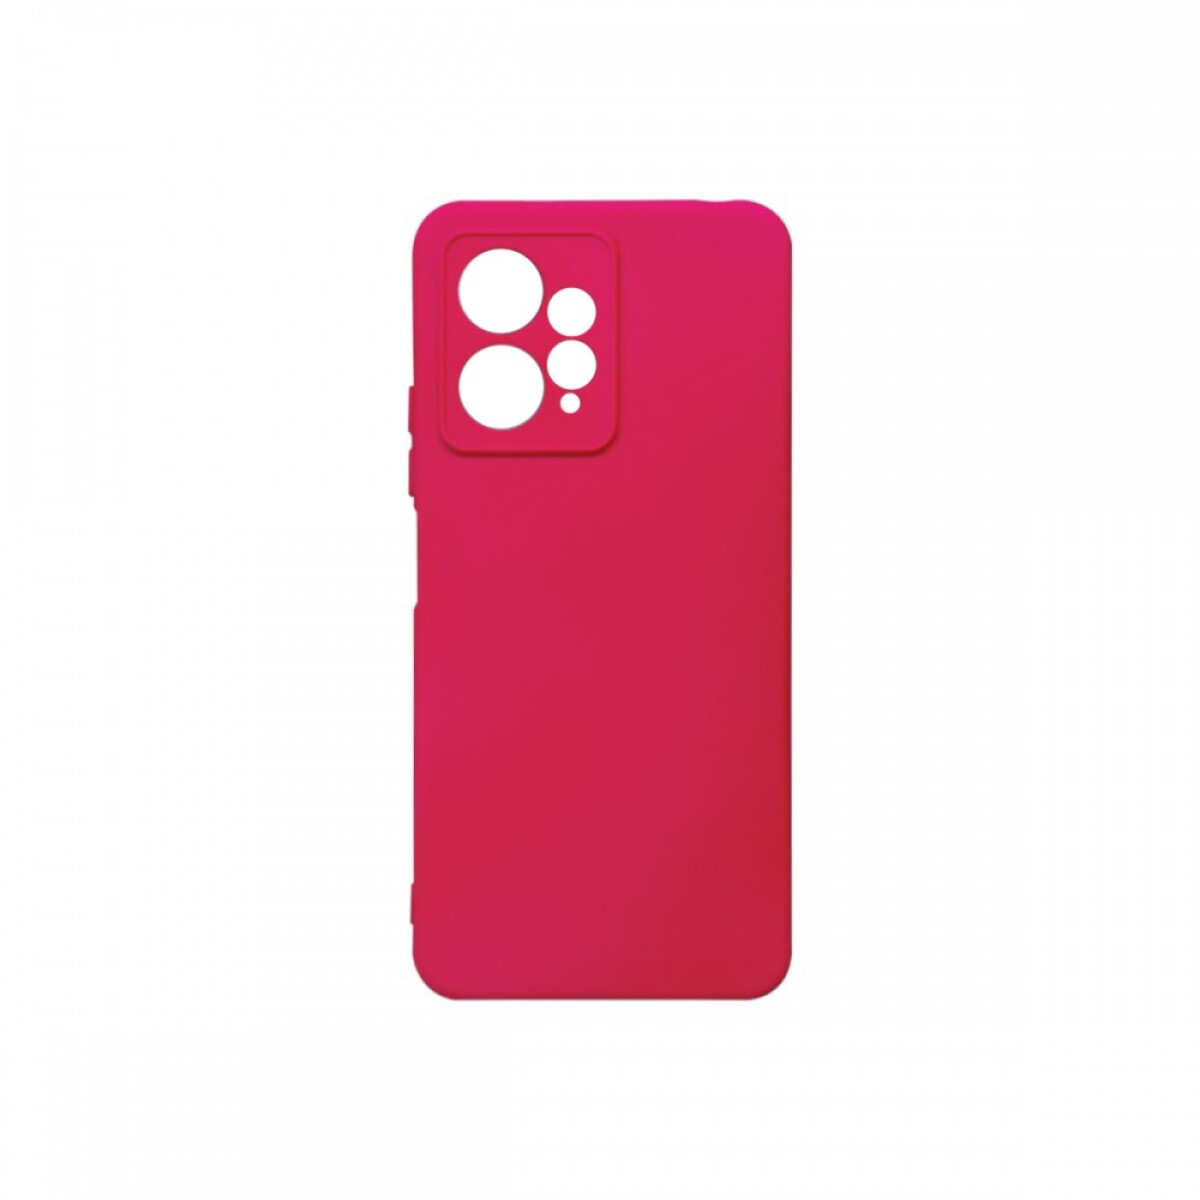 Protector Case de Silicona para Xiaomi Redmi Note 12 - Rosa neon 